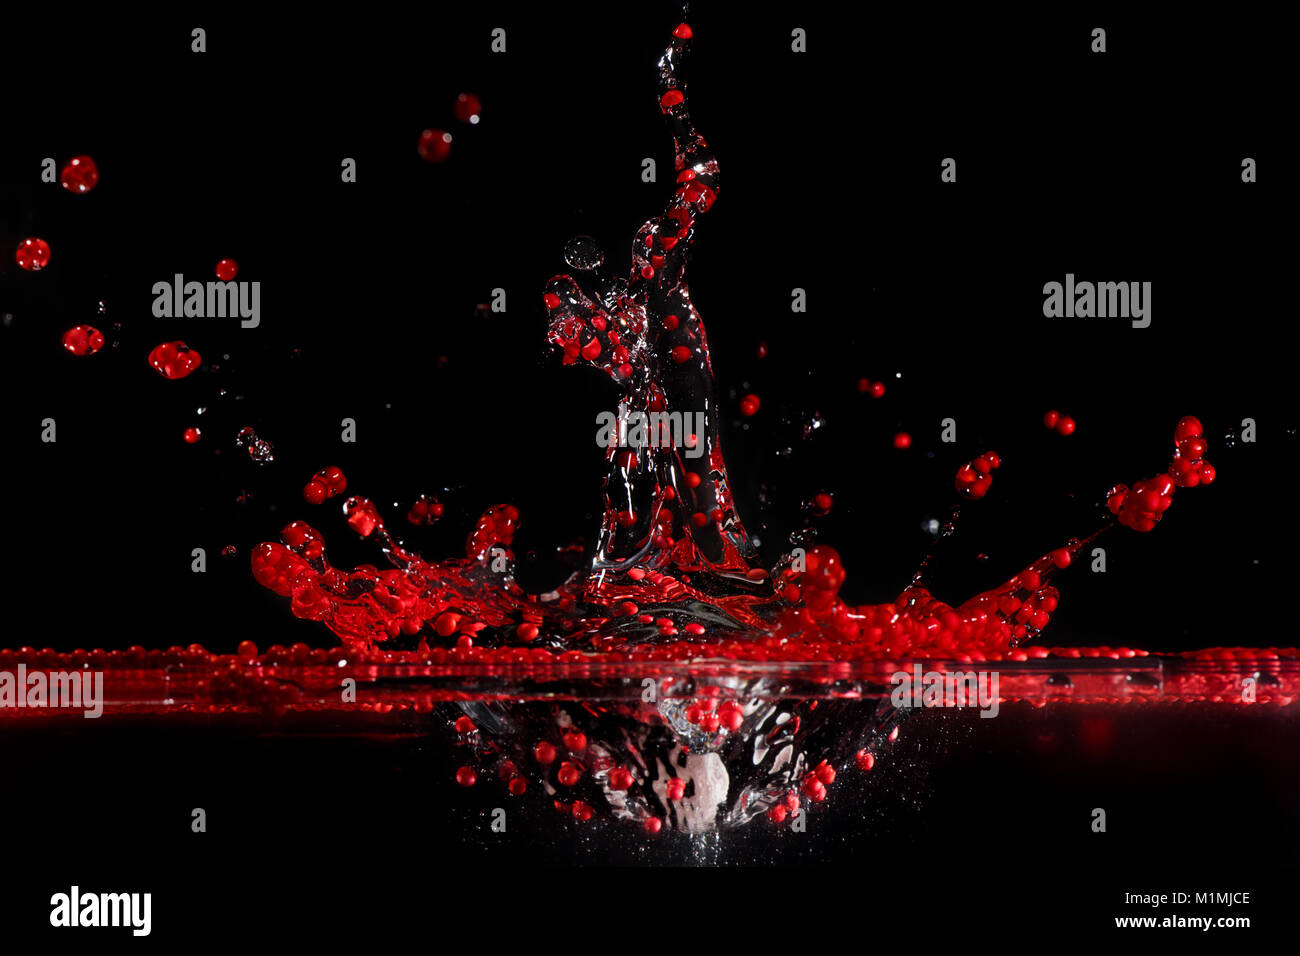 Des sphérules de polystyrène rouge splashing in water Banque D'Images